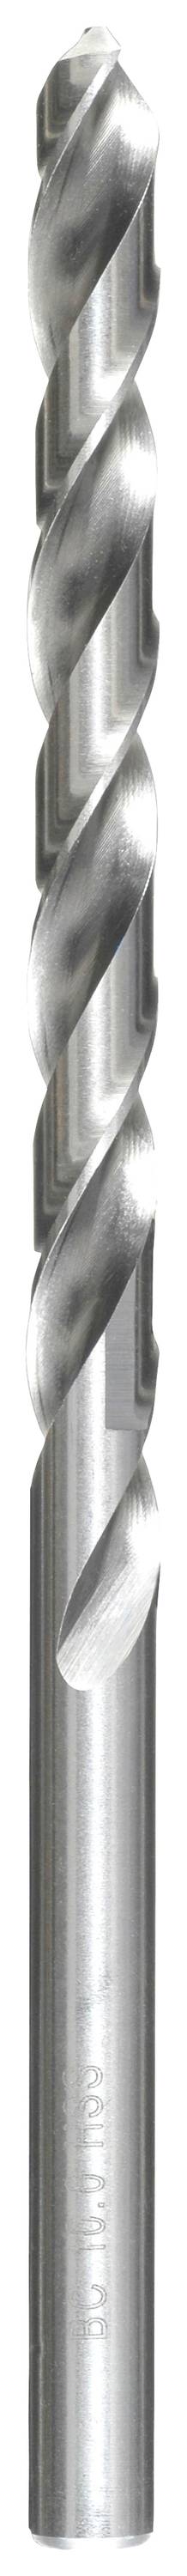 KWB 217080 HSS Spiralbohrer 1 Stück 8 mm Gesamtlänge 165 mm DIN 340 Zahnkranzbohrfutter 1 St.